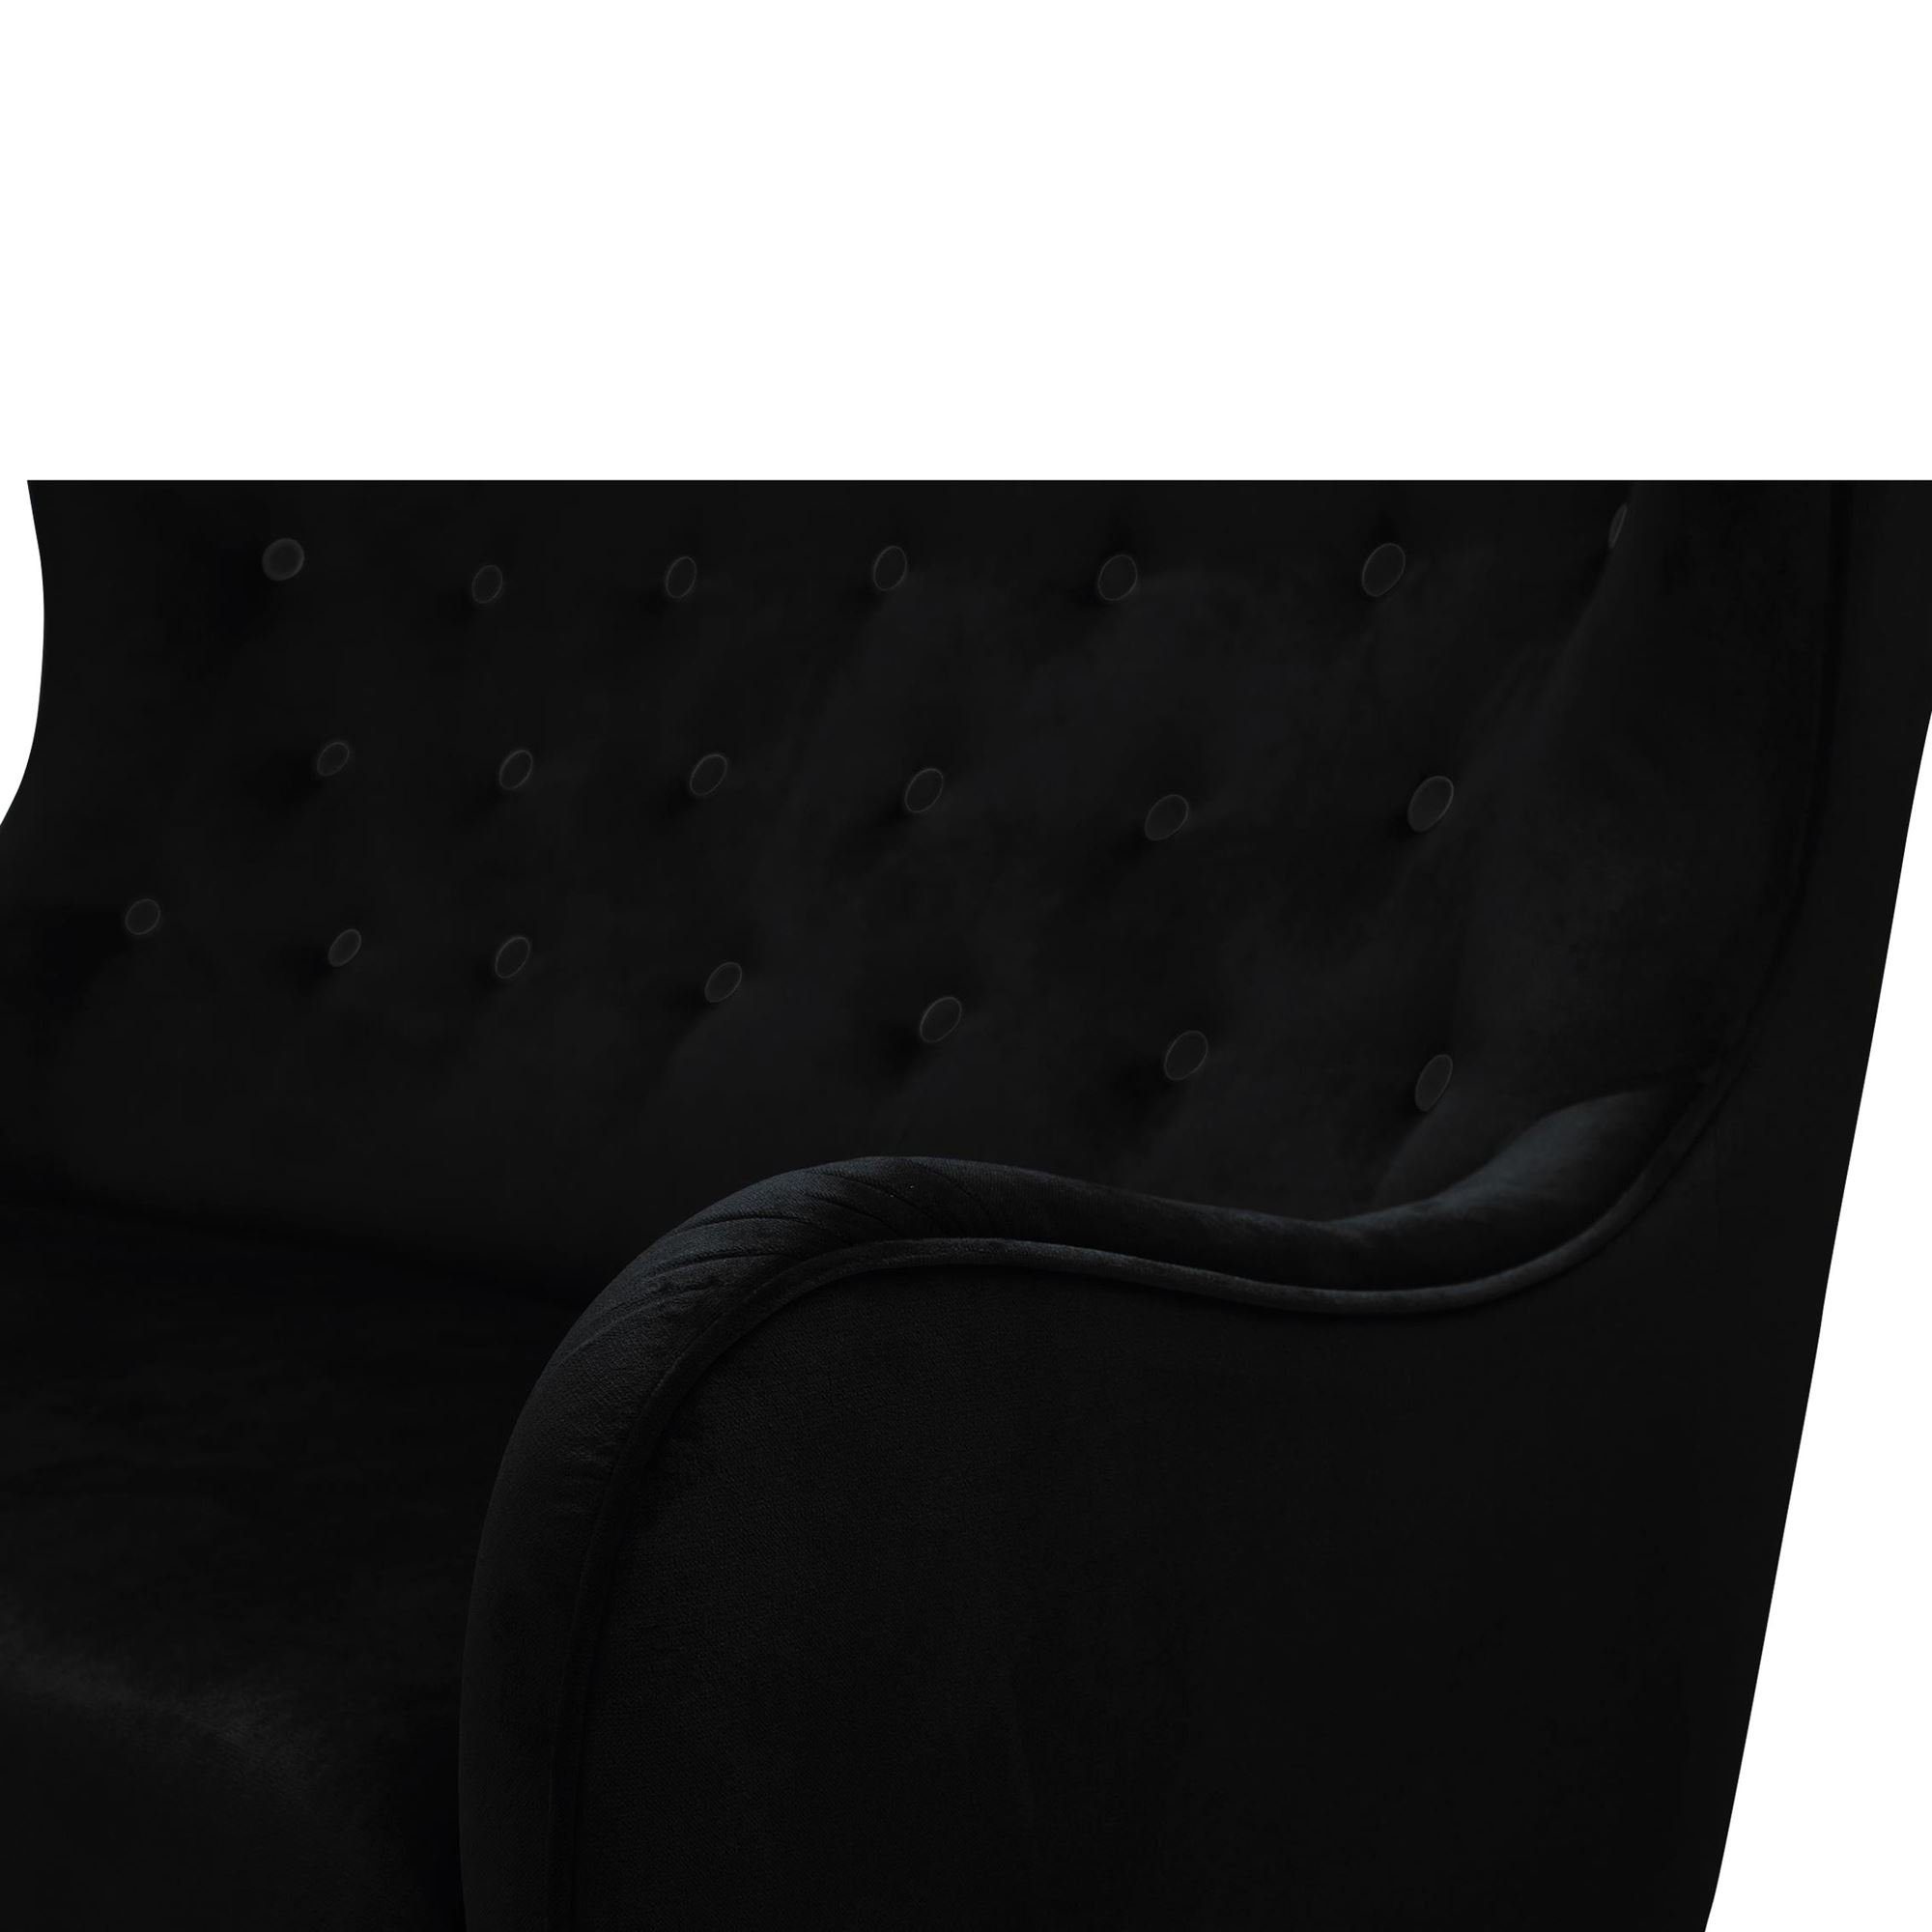 Sofa Teile, Bezug Kostenlosem Sitz inkl. Sparpreis natur, 58 hochwertig Versand Karmen aufm Samtvelours 1 Kessel Buche Sofa 2-Sitzer verarbeitet,bequemer